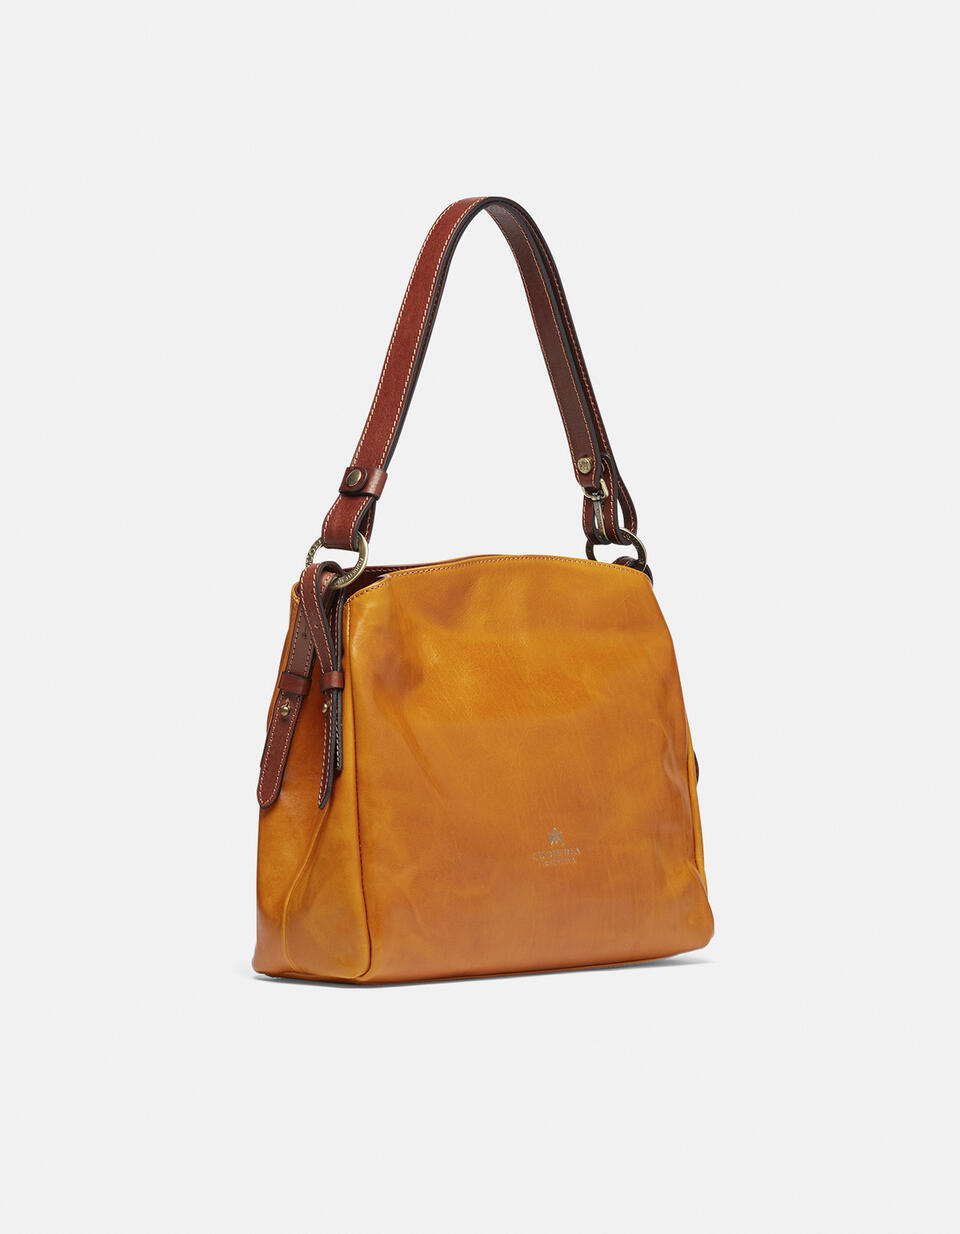 Large leather shoulder bag - Shoulder Bags - WOMEN'S BAGS | bags  - Shoulder Bags - WOMEN'S BAGS | bagsCuoieria Fiorentina